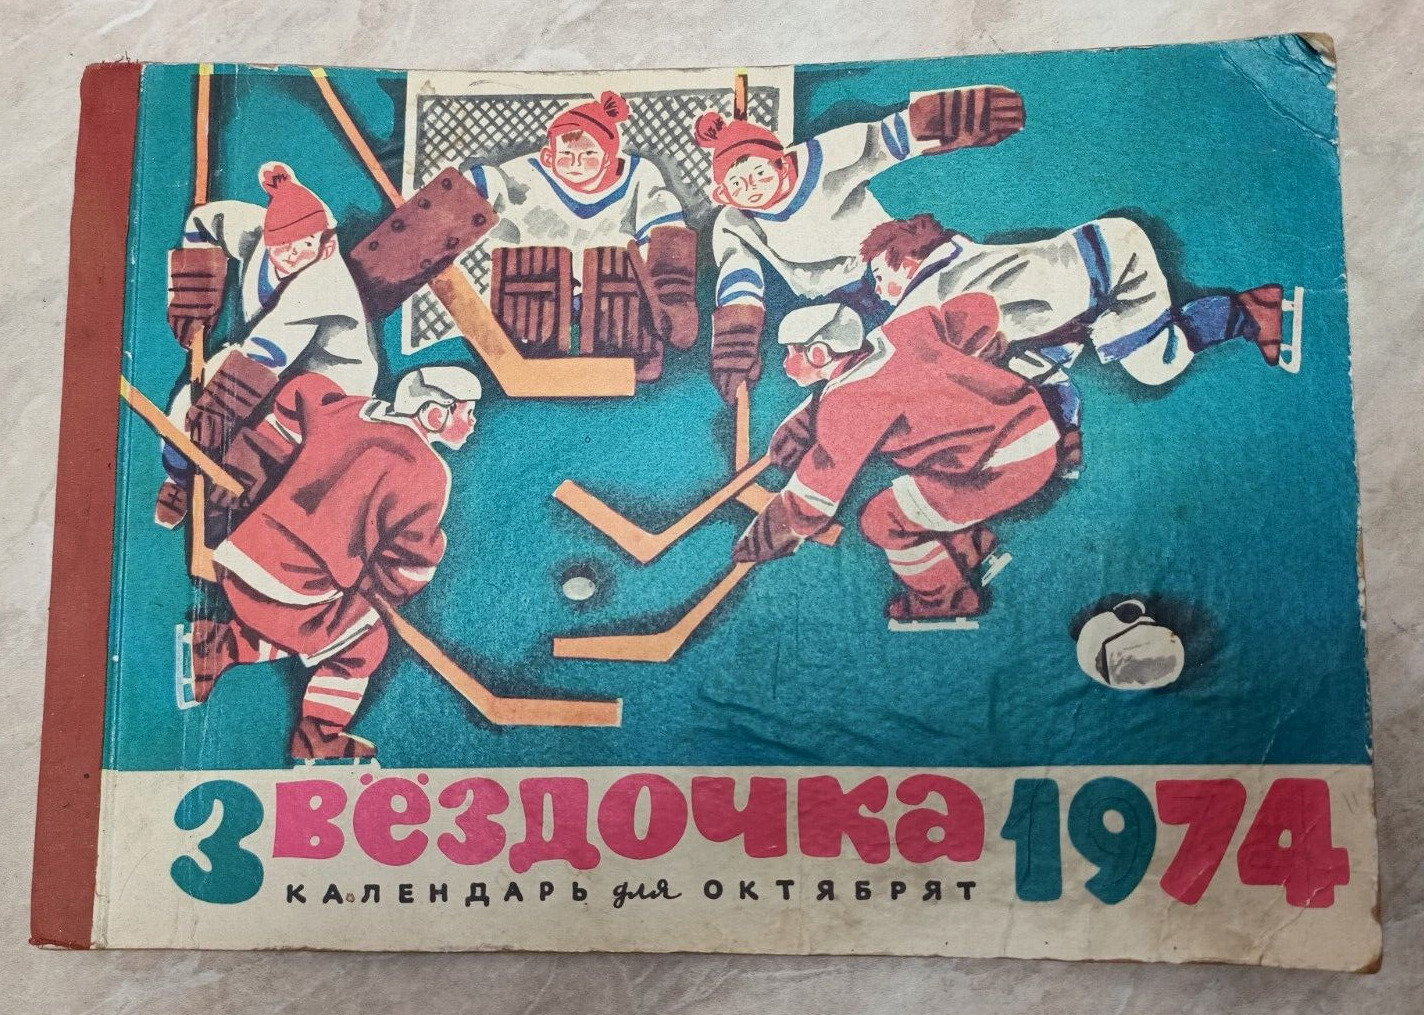 Vintage children's calendar USSR 1974.